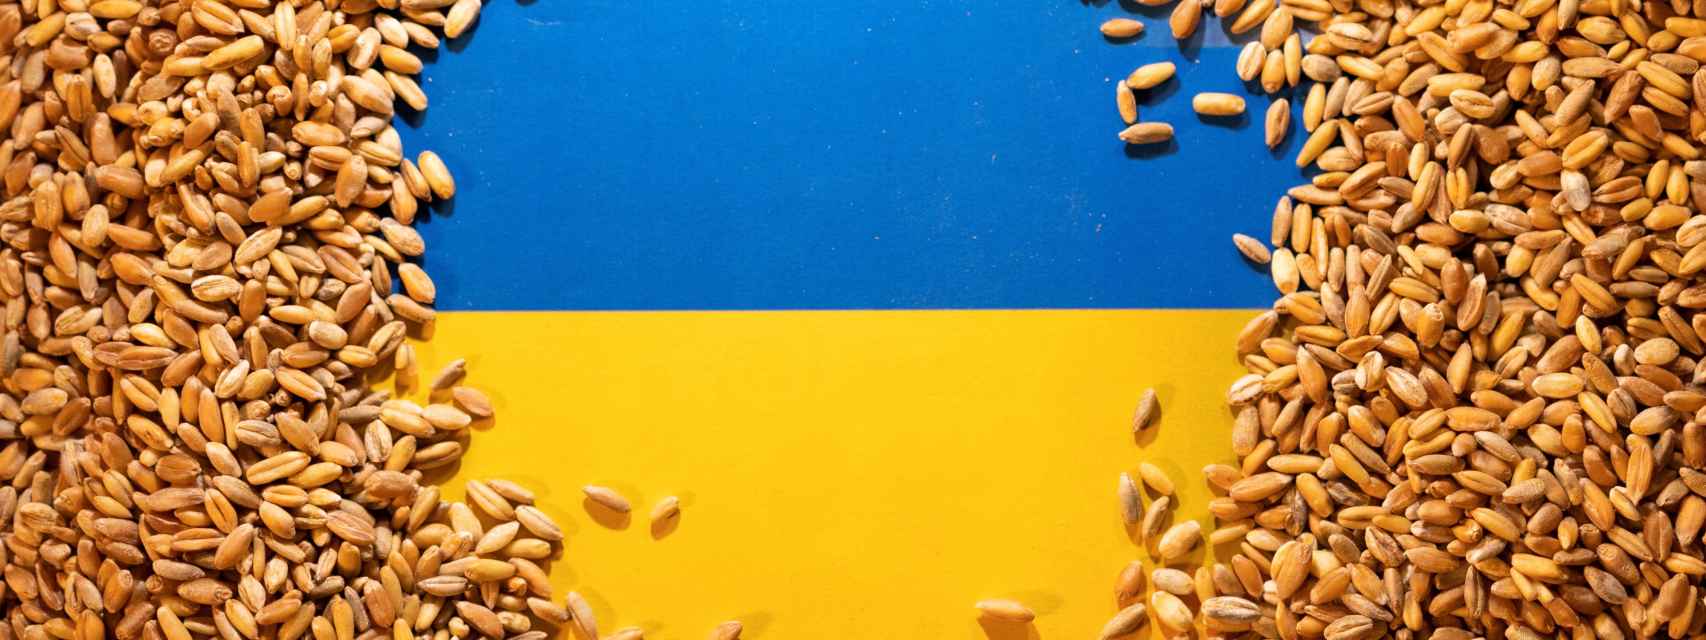 La bandera de Ucrania rodeada de granos de cereal.